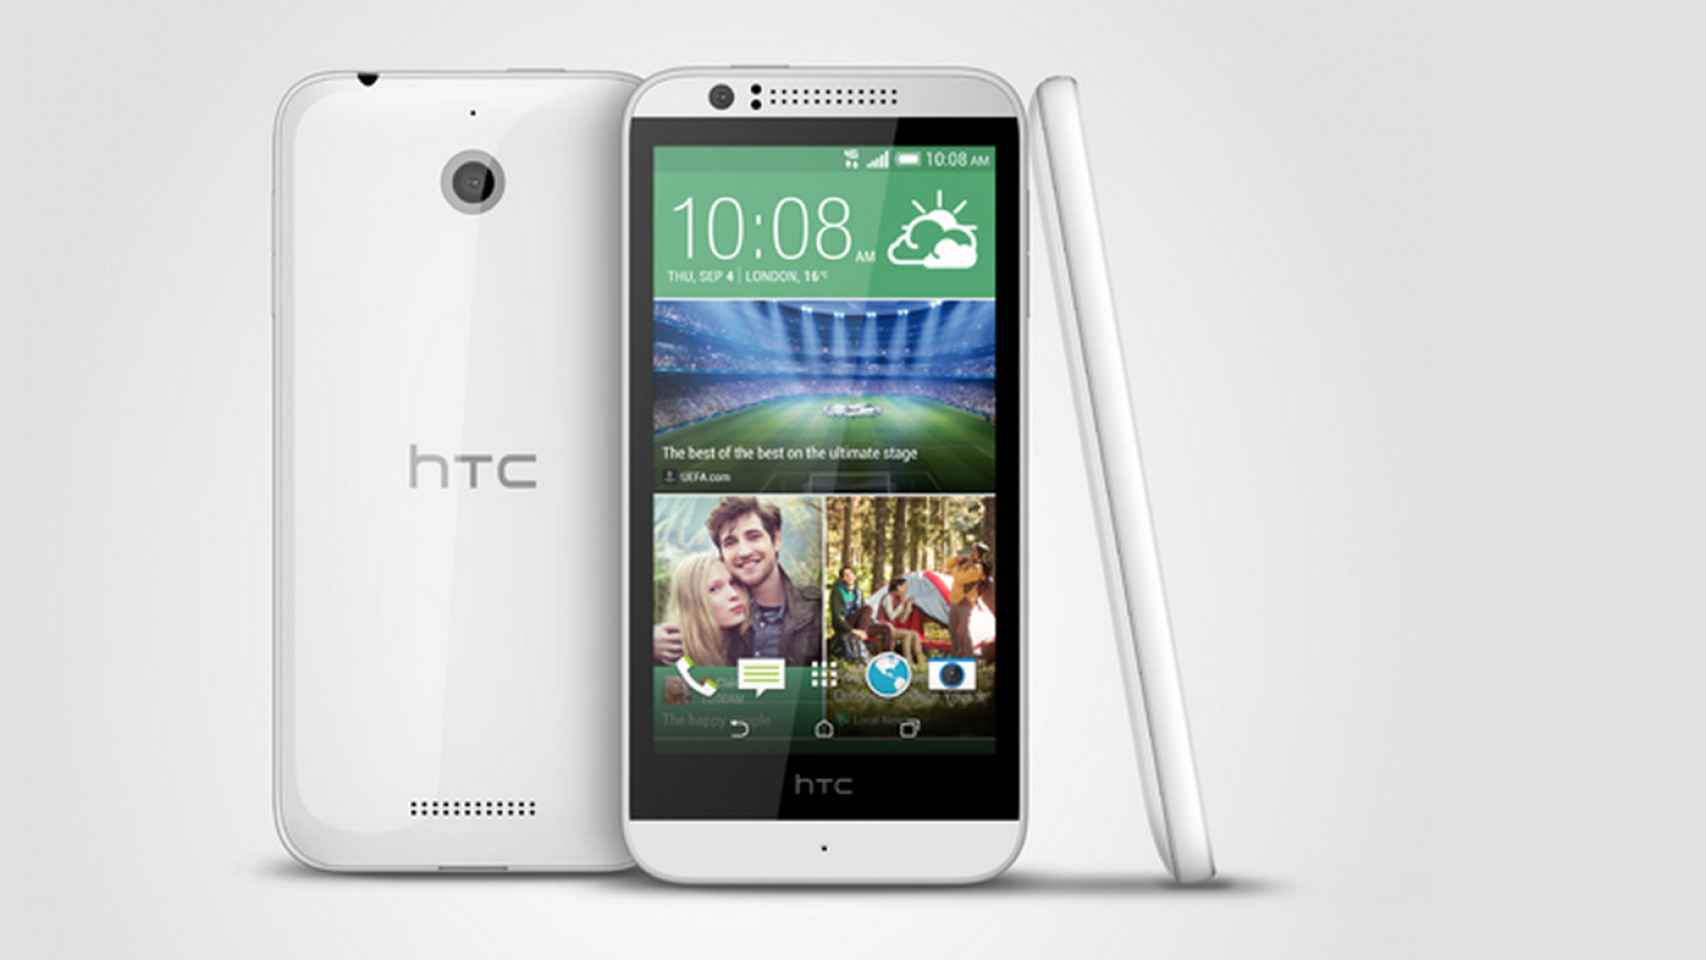 HTC Desire 510, el terminal económico de 64 bits con Snapdragon410 y LTE